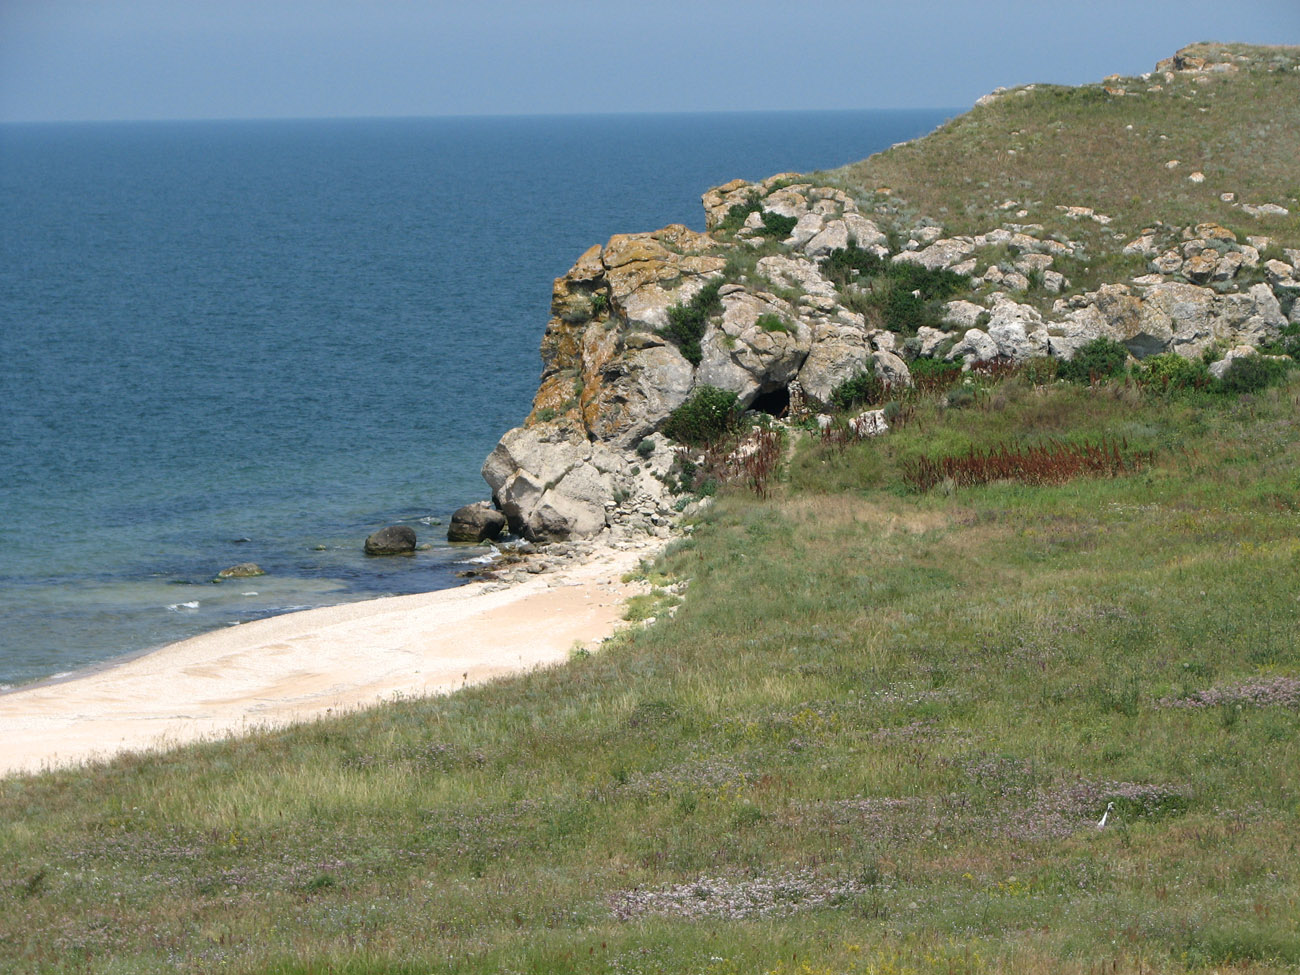 Караларская степь, изображение ландшафта.